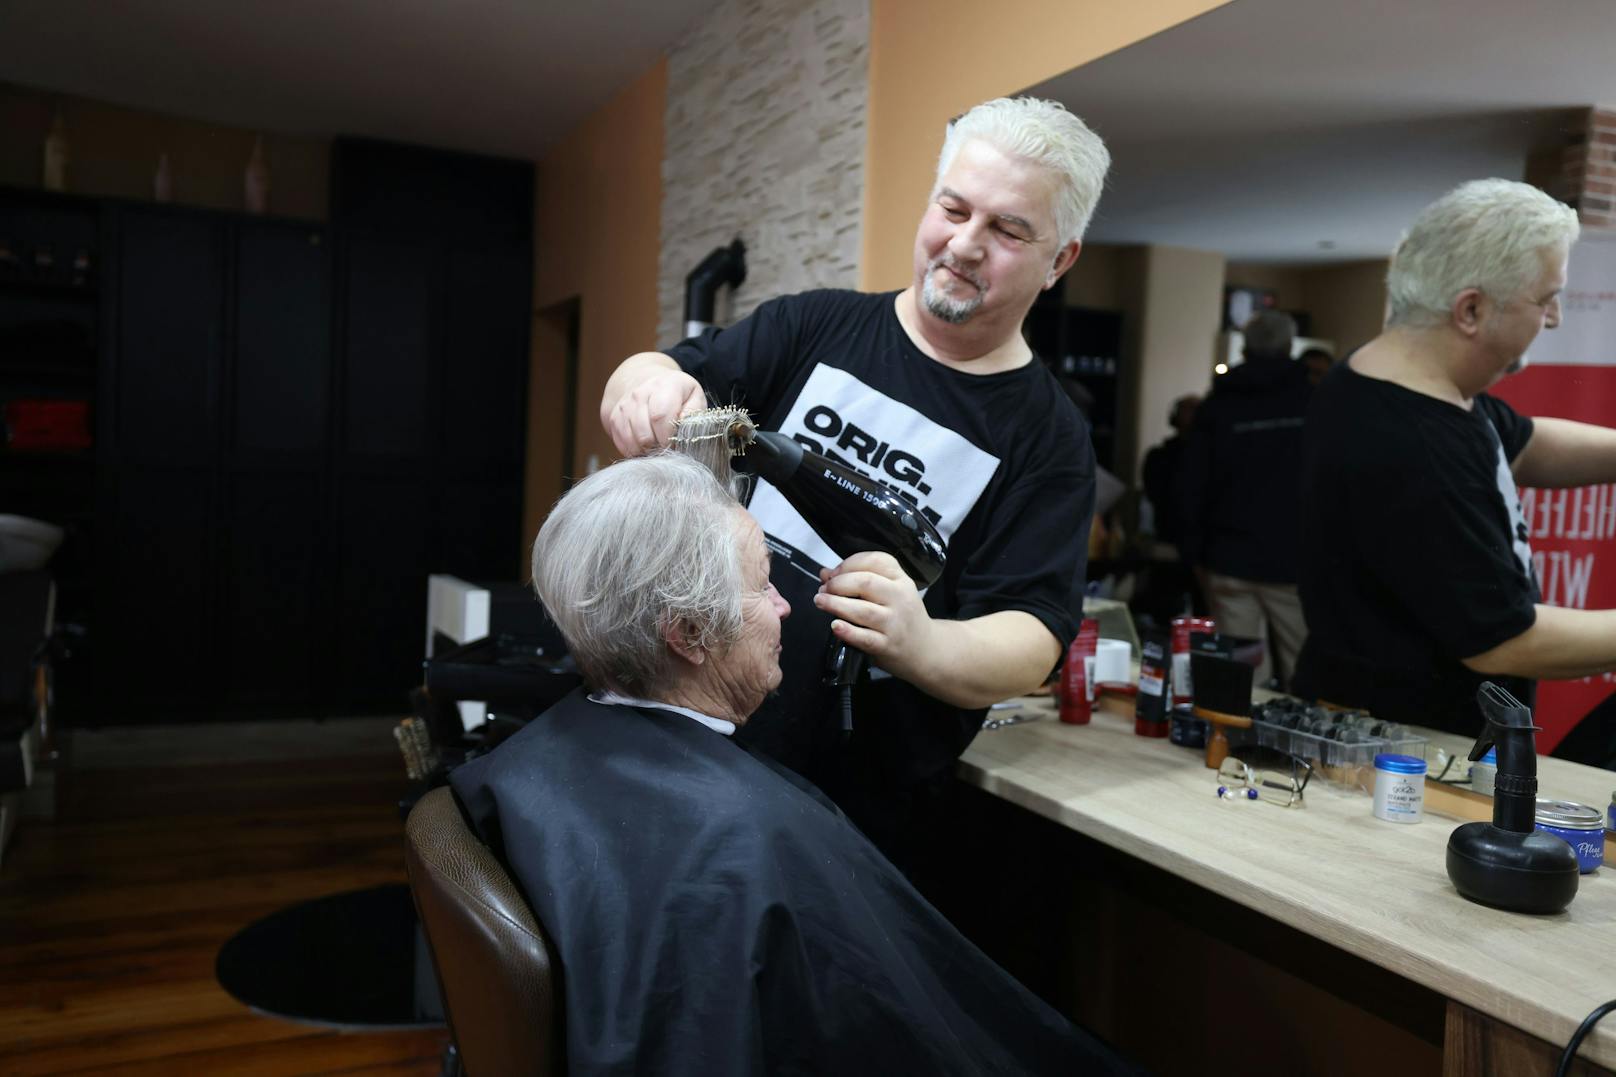 Friseur Neša schneidet für eine Aktion gratis die Haare von Kundin Annemarie.